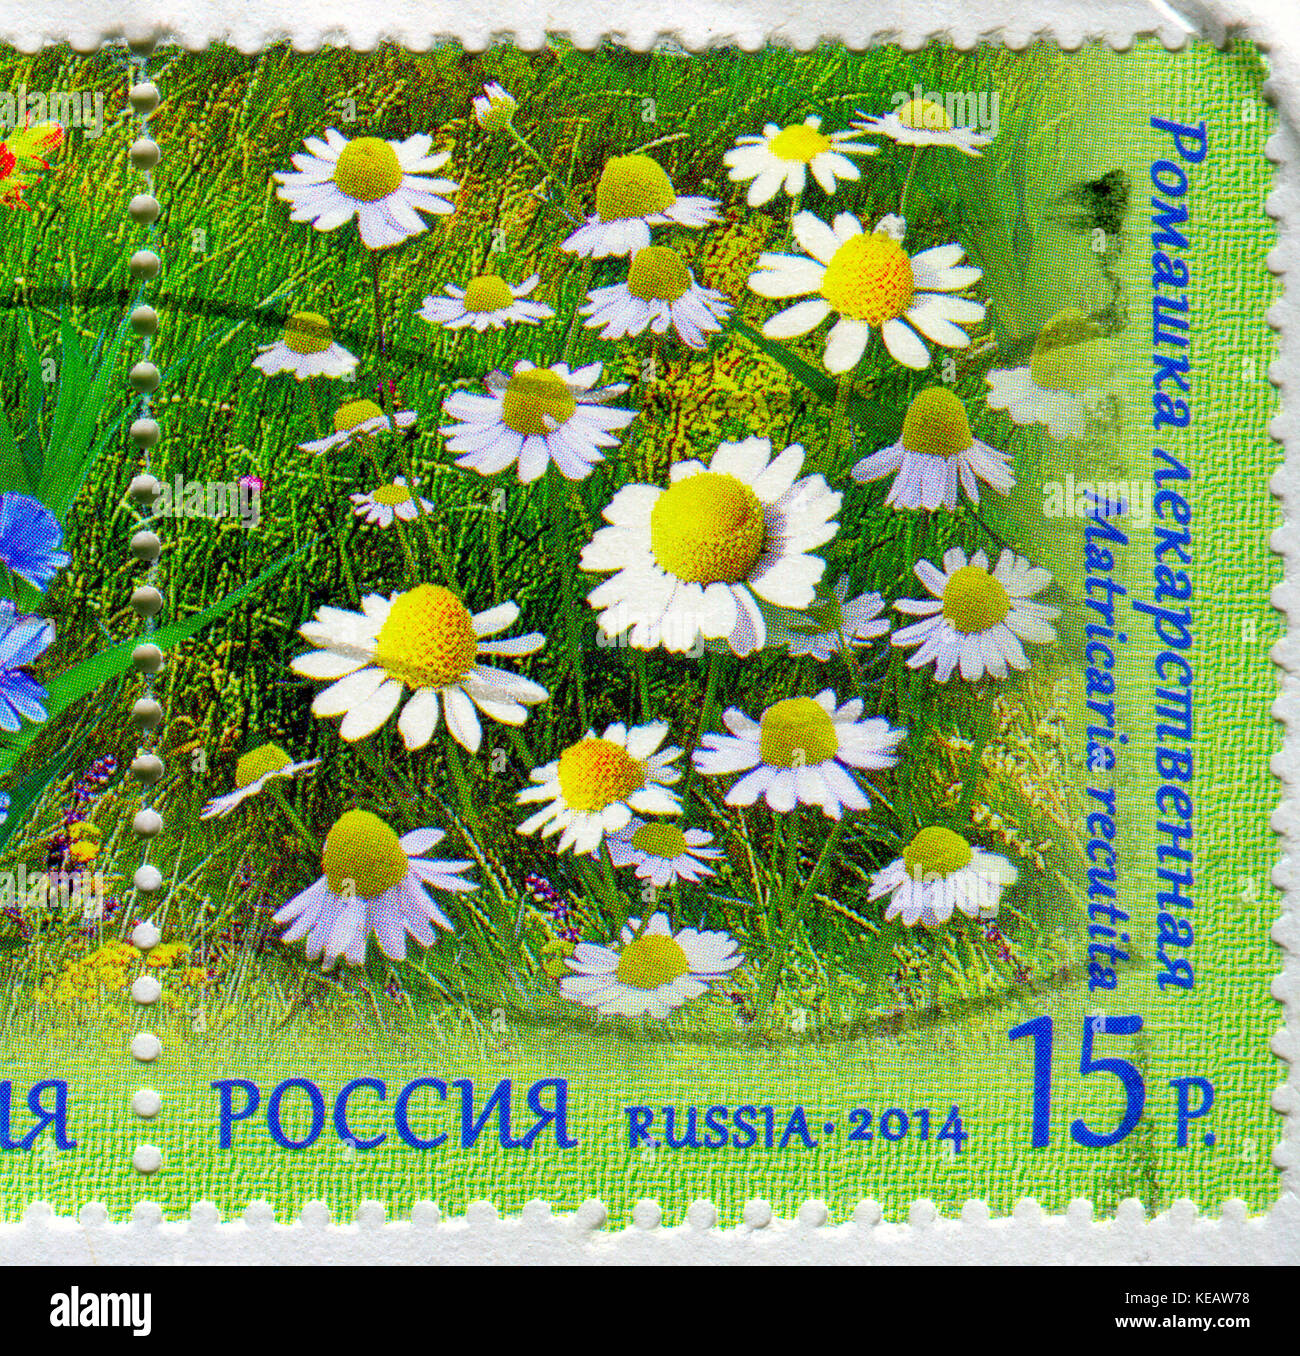 Gomel, Bélarus, 13 octobre 2017, de timbres en Russie montre image de la matricaria recutita, vers 2014. Banque D'Images